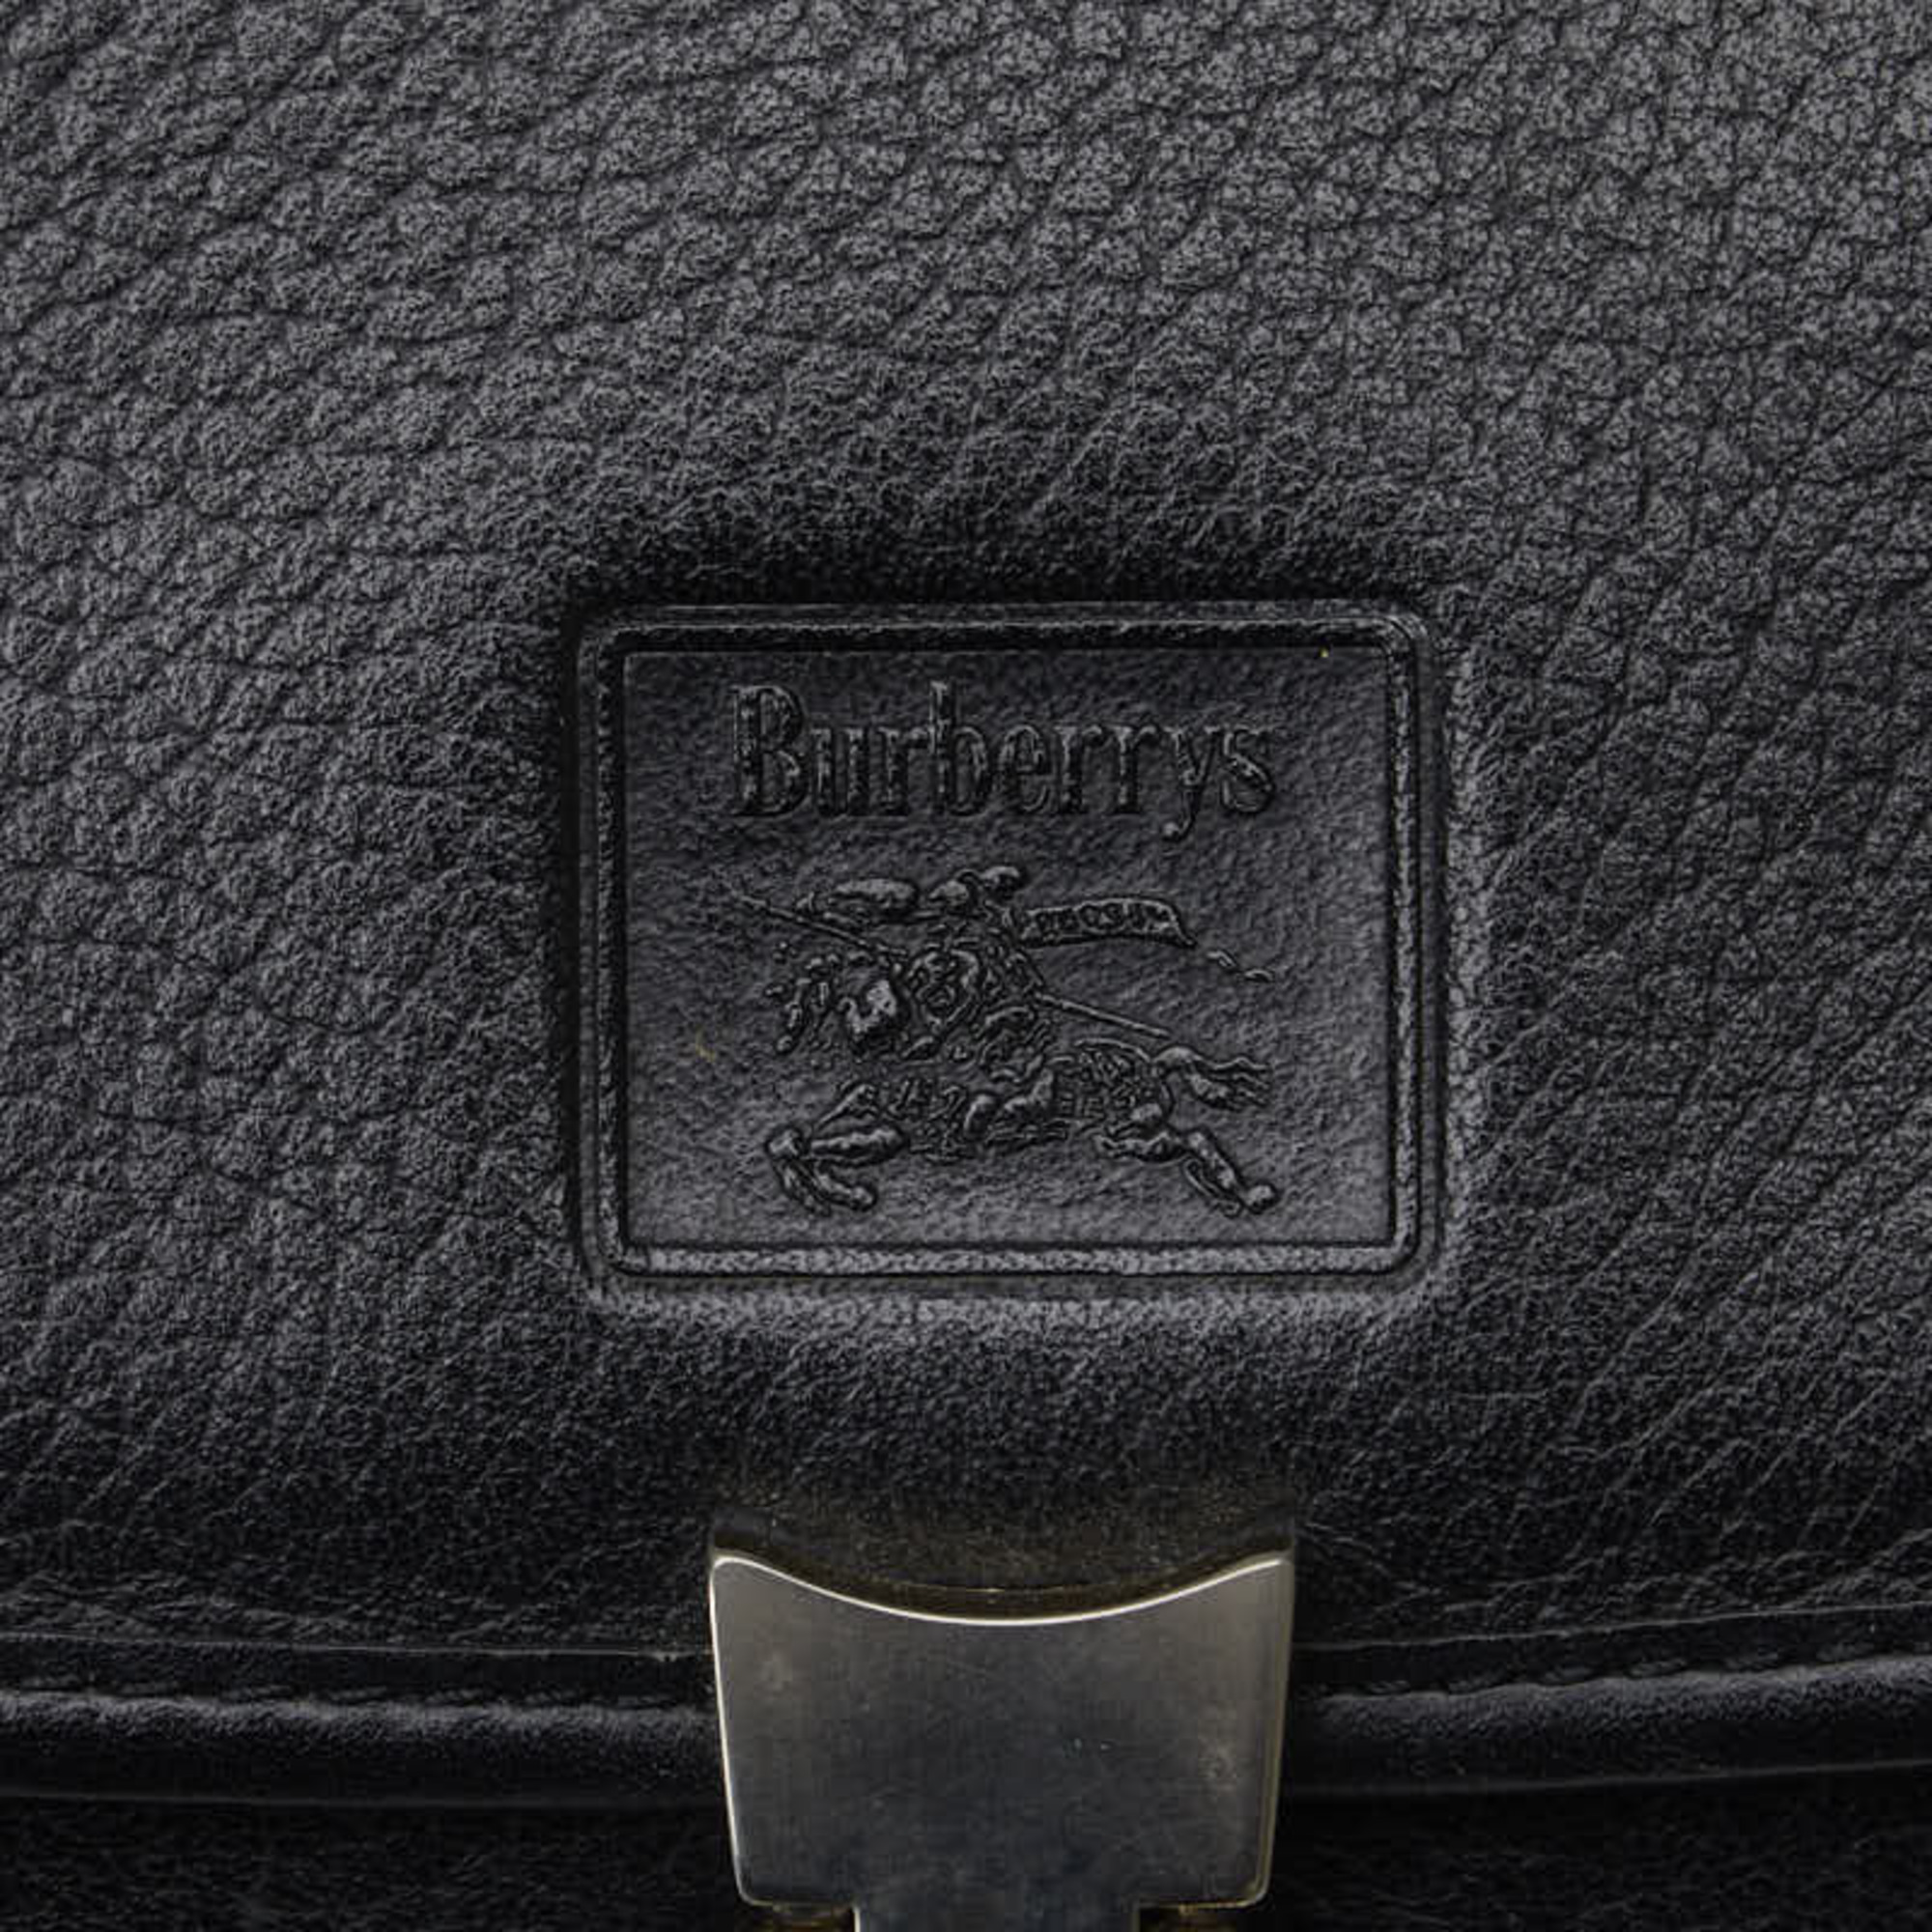 Burberry Nova Check Shadow Horse Handbag Shoulder Bag Black Silver Leather Women's BURBERRY